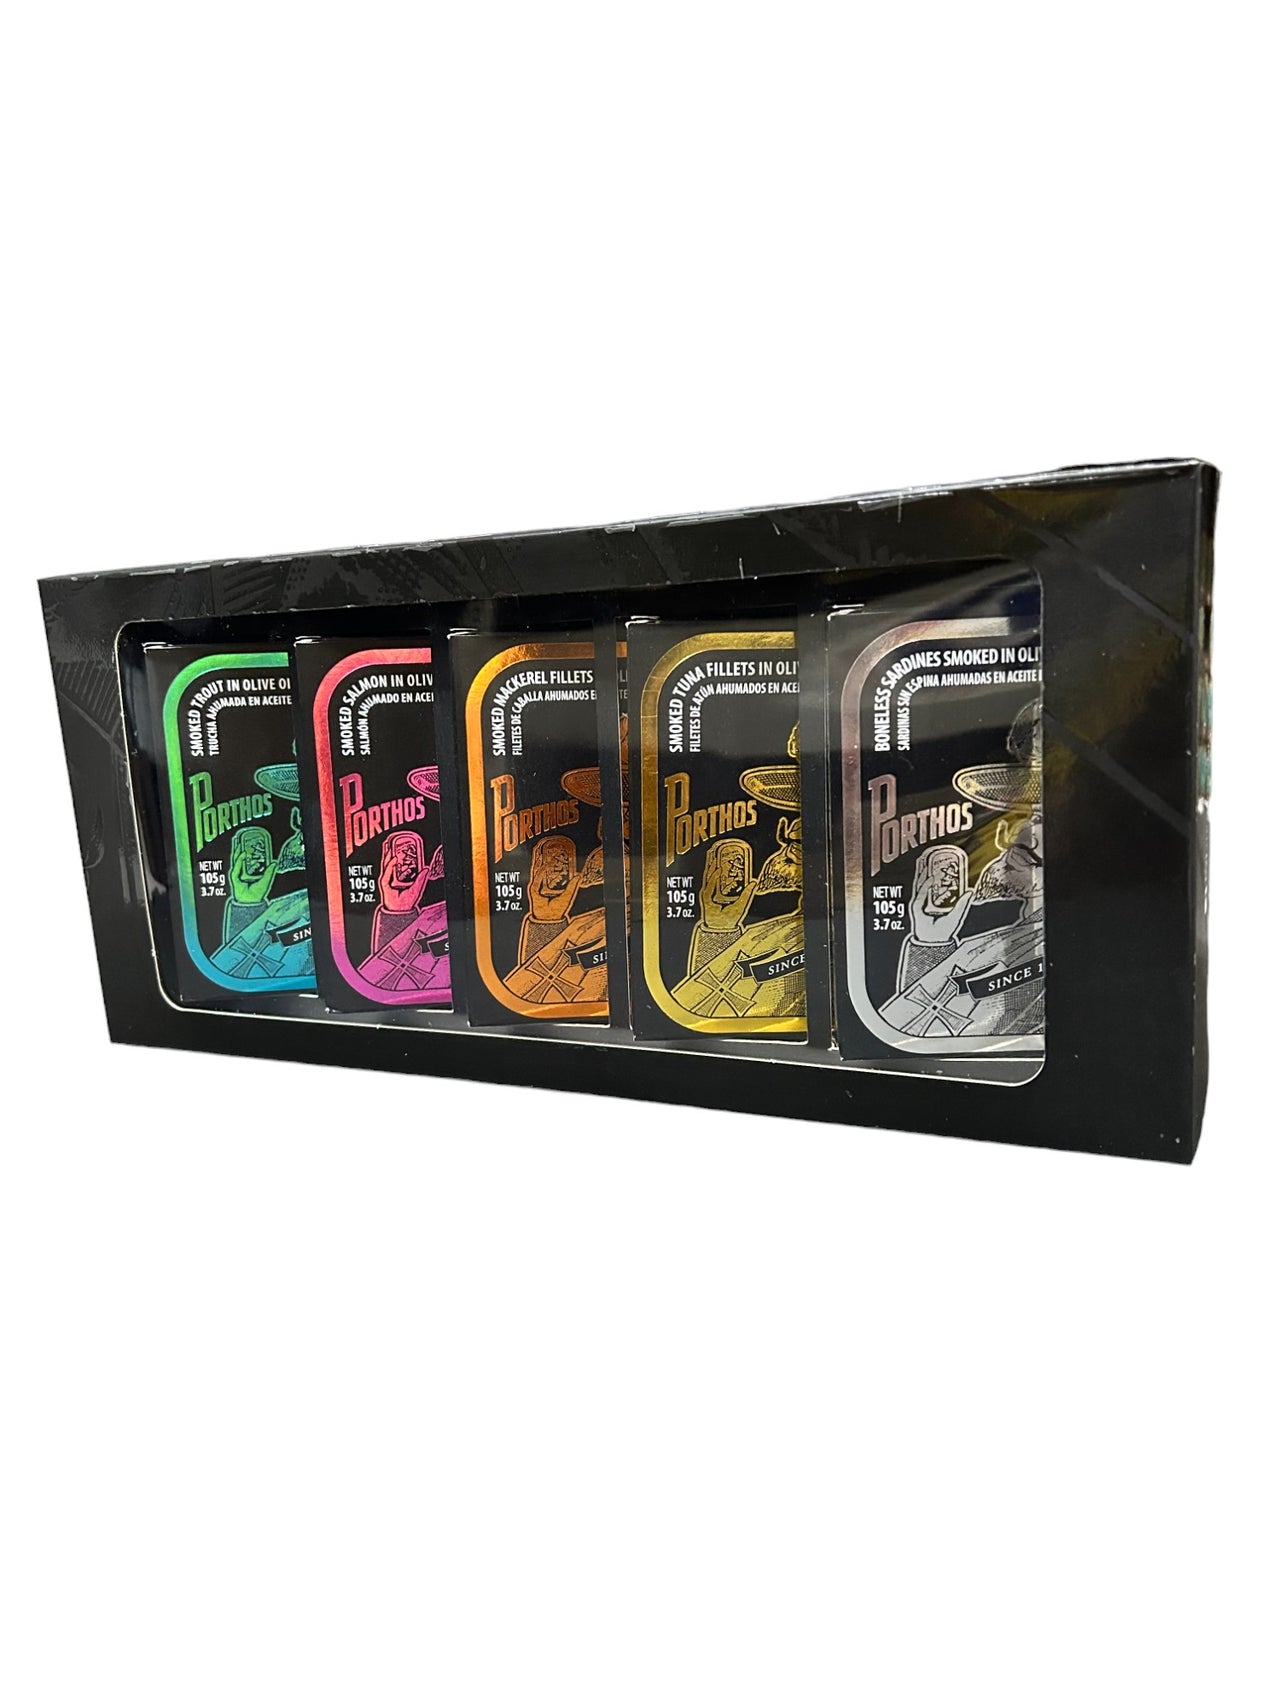 Porthos Smoked Gift Box Variety Pack - 5 Pack